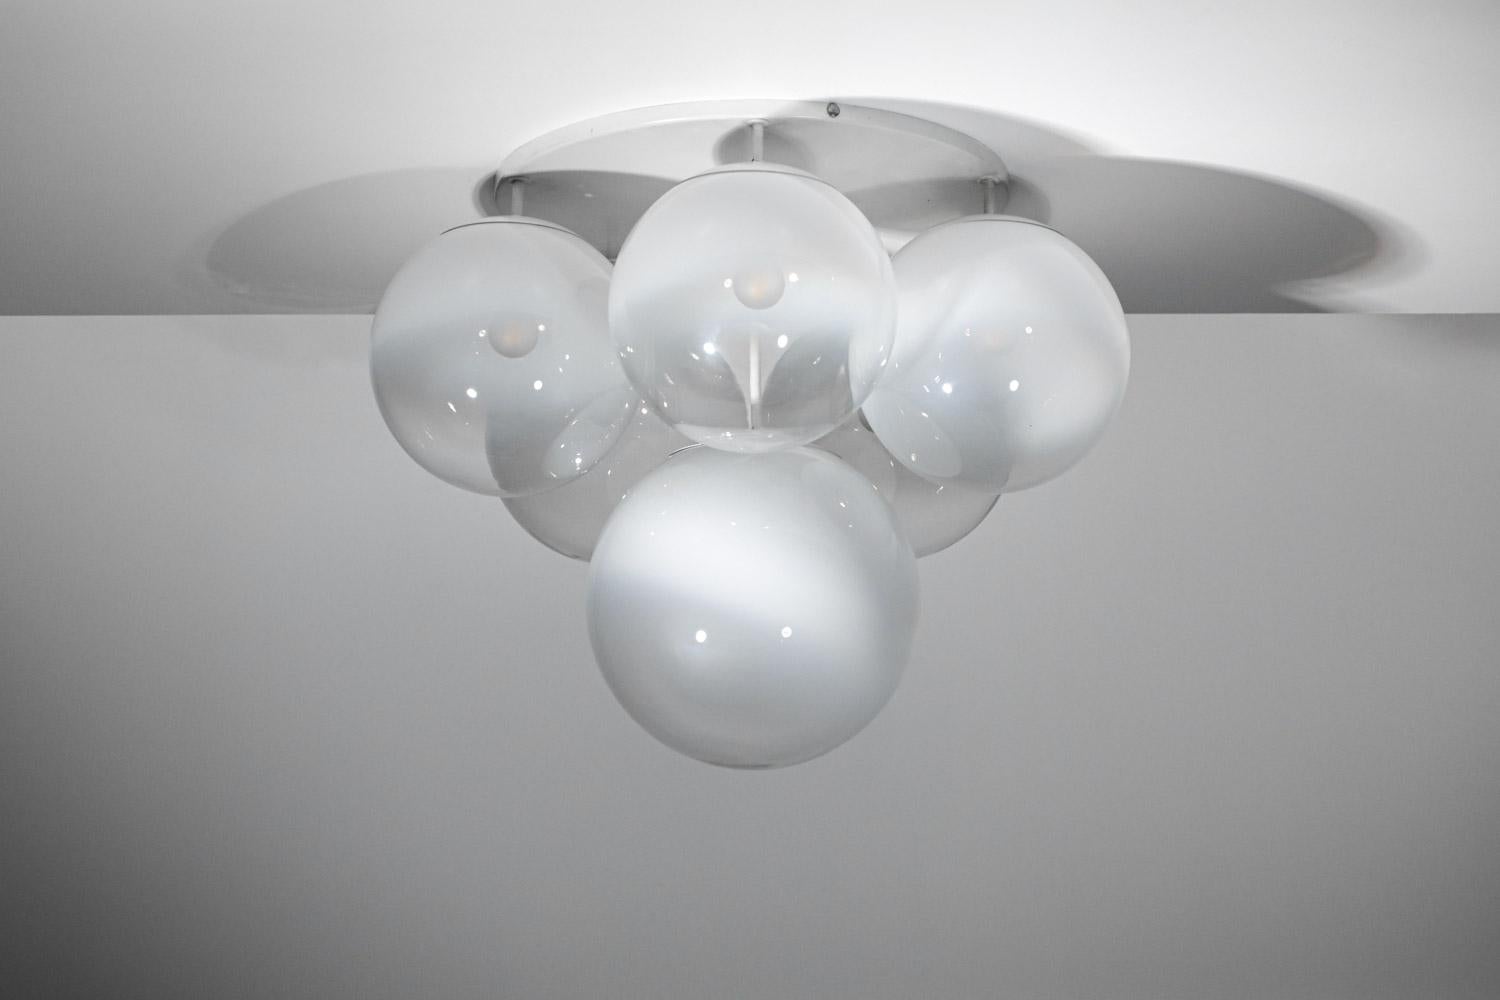 Pair of 70's Italian ceiling lights in Murano glass Gino Sarfatti style - G723 - 4